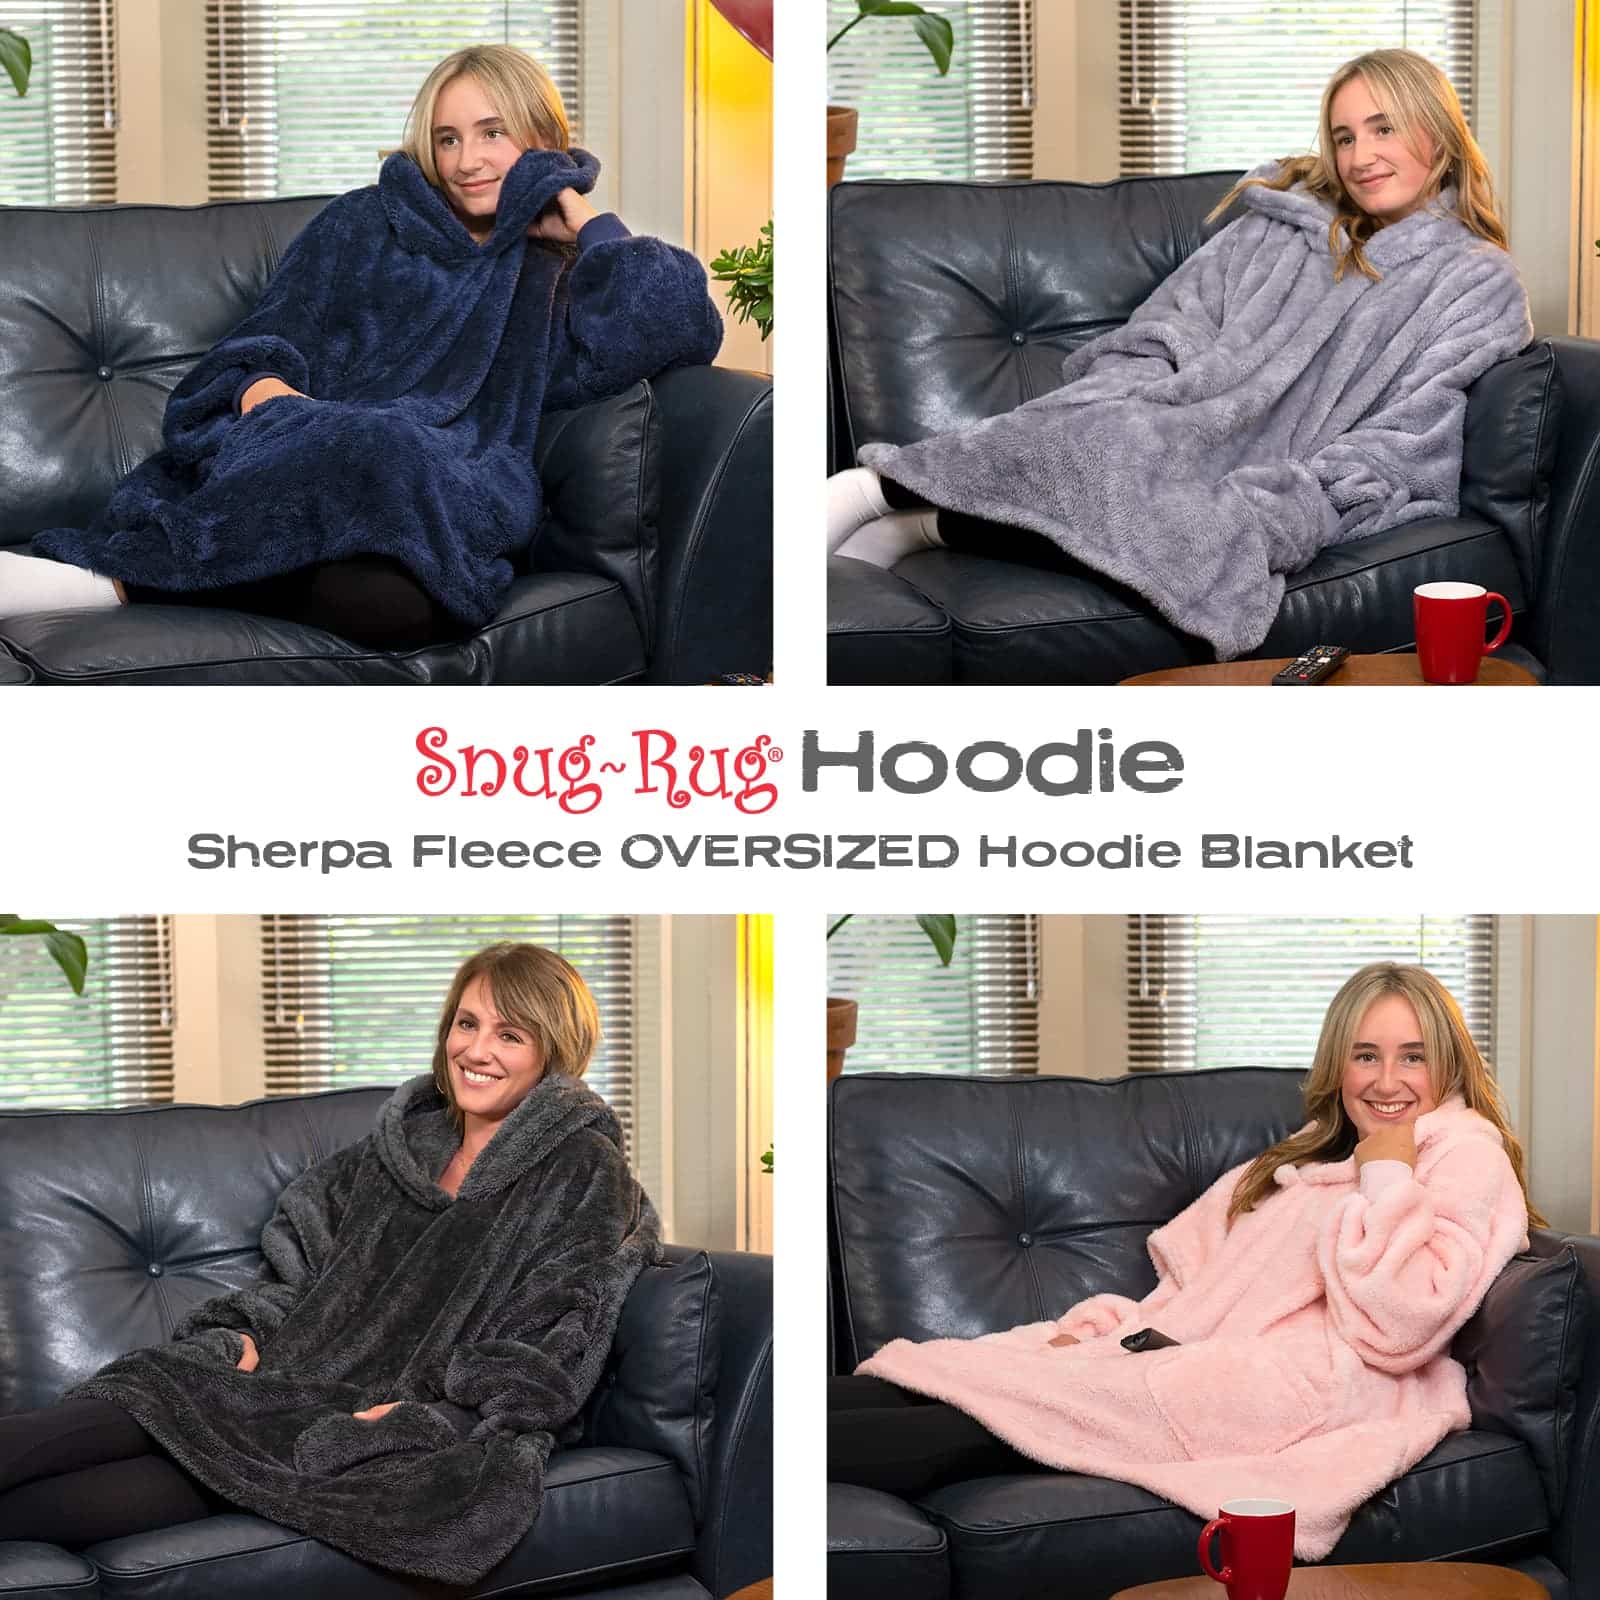 Snug-Rug Hoodie Blanket